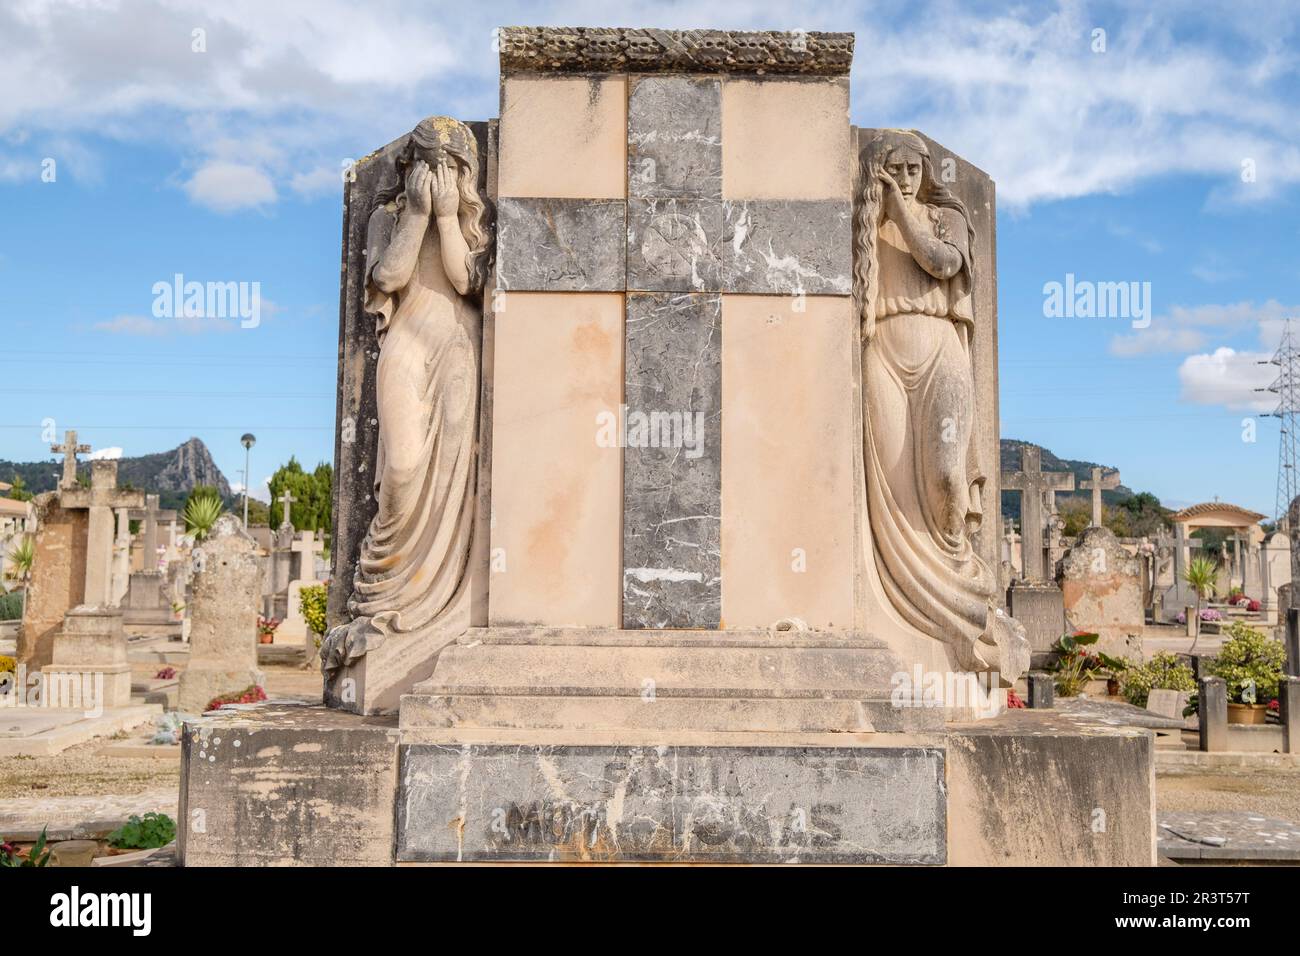 Donna che piange, tomba della famiglia Mut Tomas, cimitero di Llucmajor, Maiorca, Isole Baleari, Spagna. Foto Stock